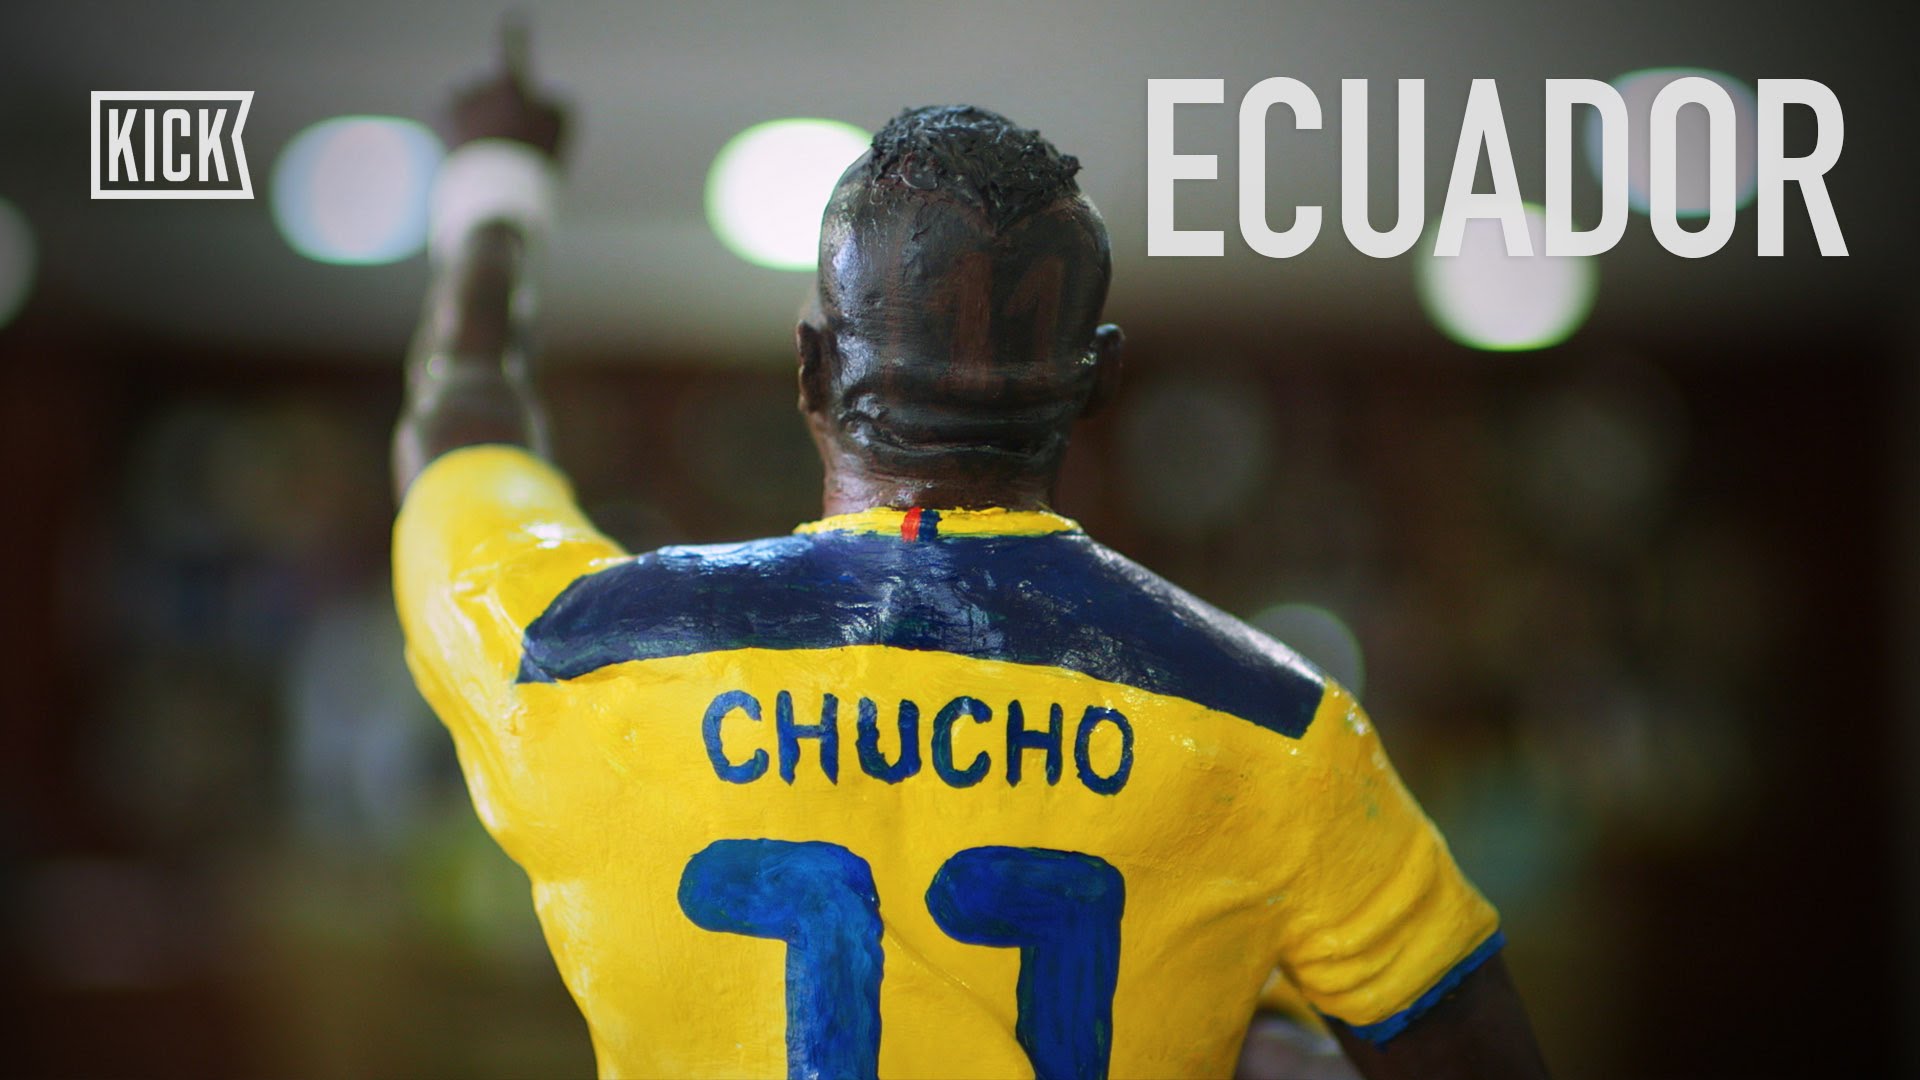 Como el fútbol cambio Ecuador…según Kick